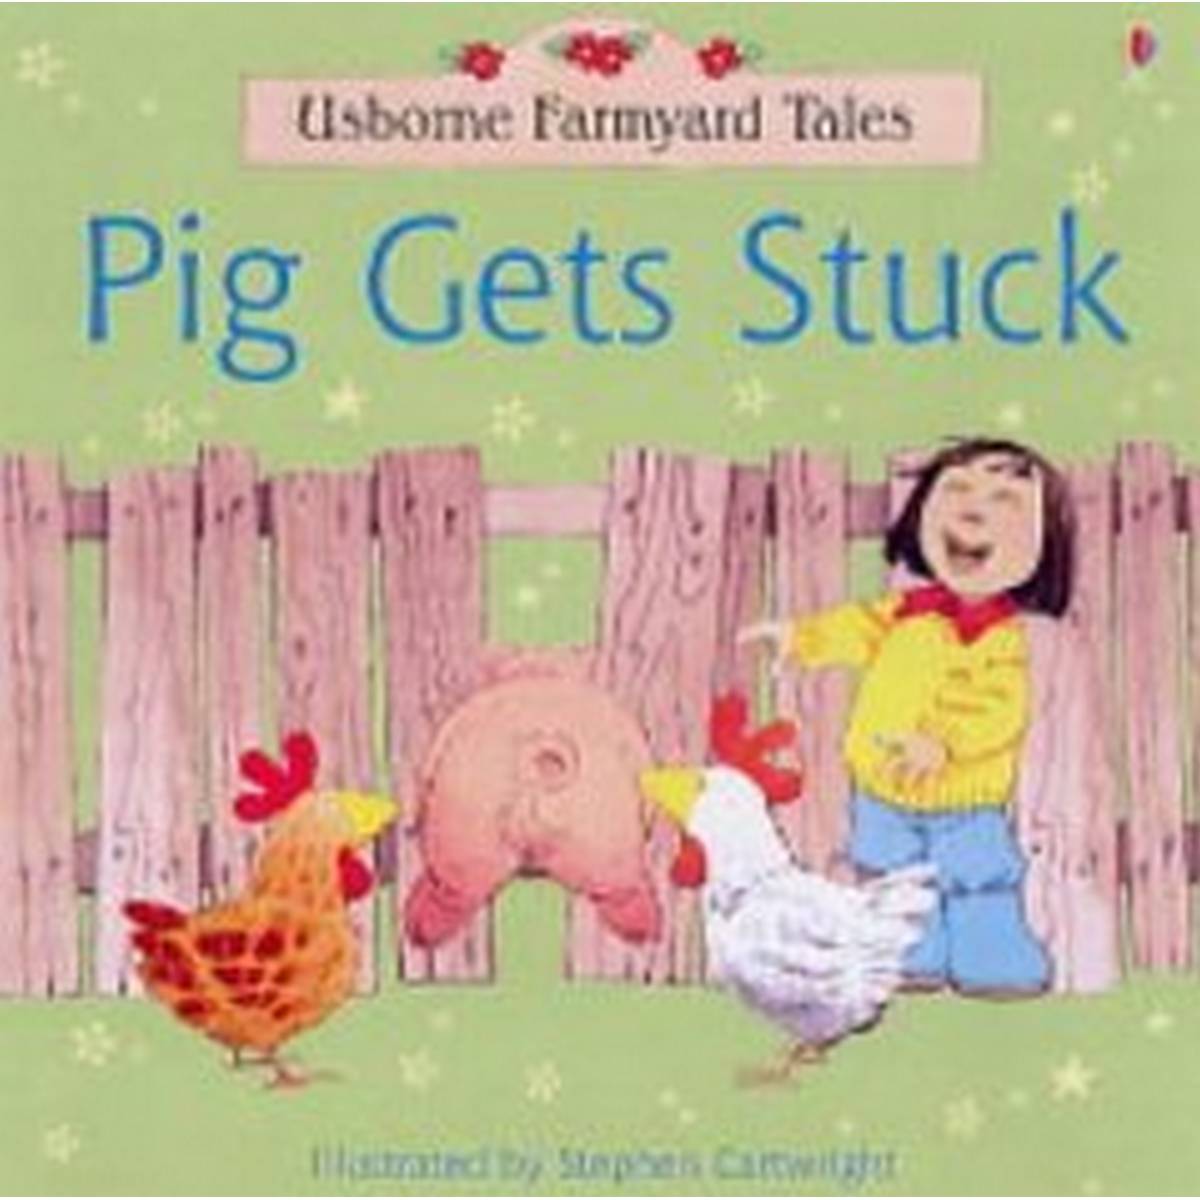 Pig Gets Stuck (Farmyard Tales)